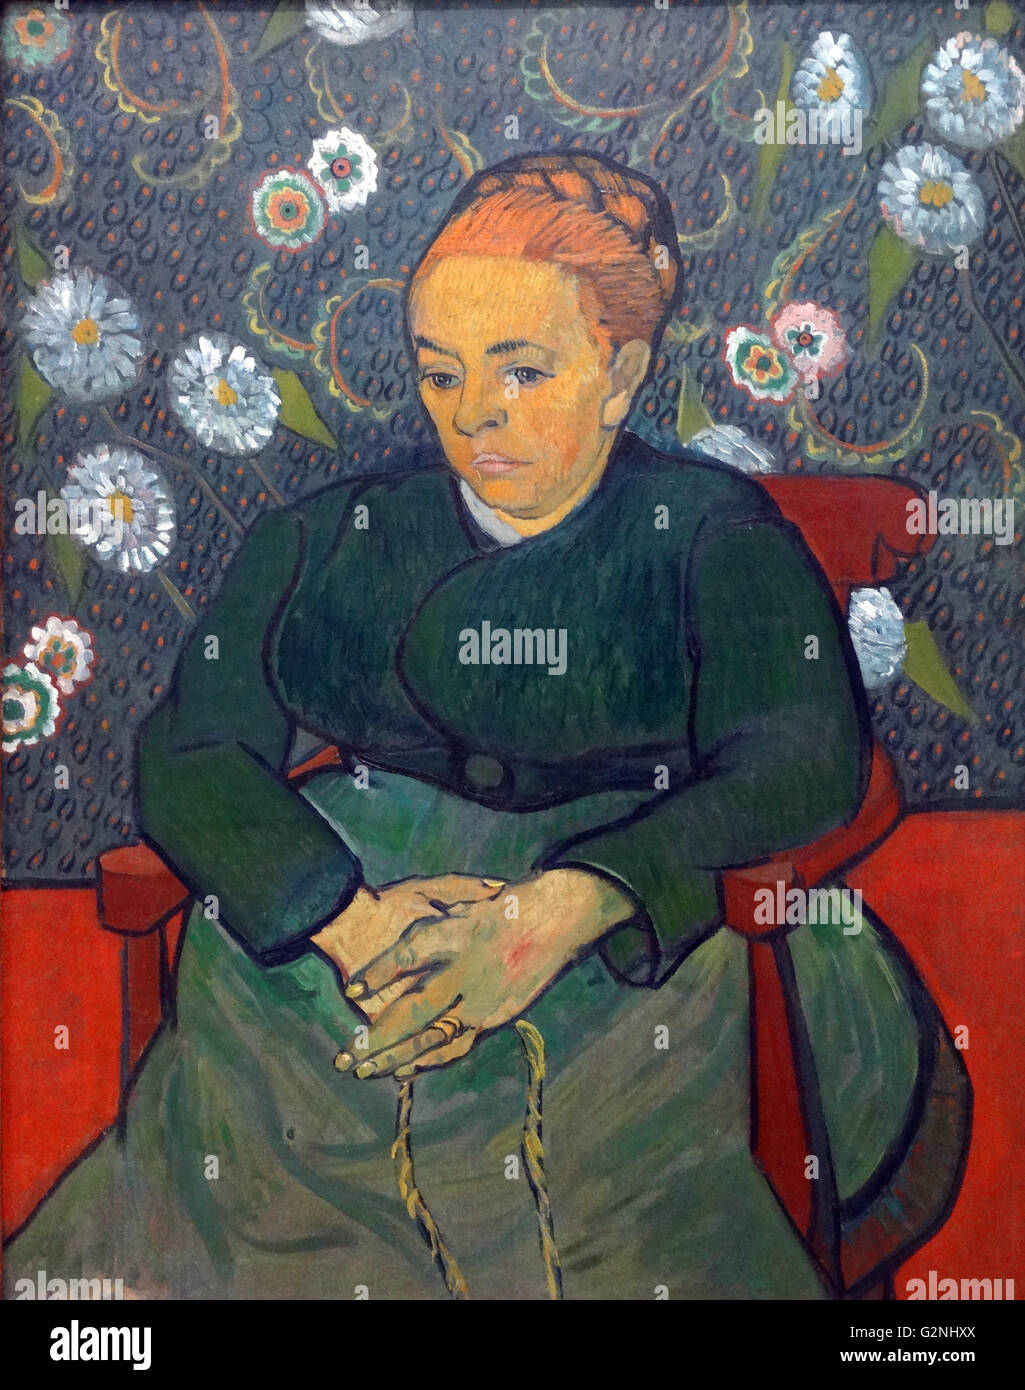 Augustine Roulin (huile sur toile) par Vincent Van Gogh (1853-1890) un peintre postimpressionniste d'origine néerlandaise dont le travail - remarquable pour sa beauté brute, l'honnêteté émotionnelle et bold color - avait une profonde influence sur l'art du xxe siècle Banque D'Images